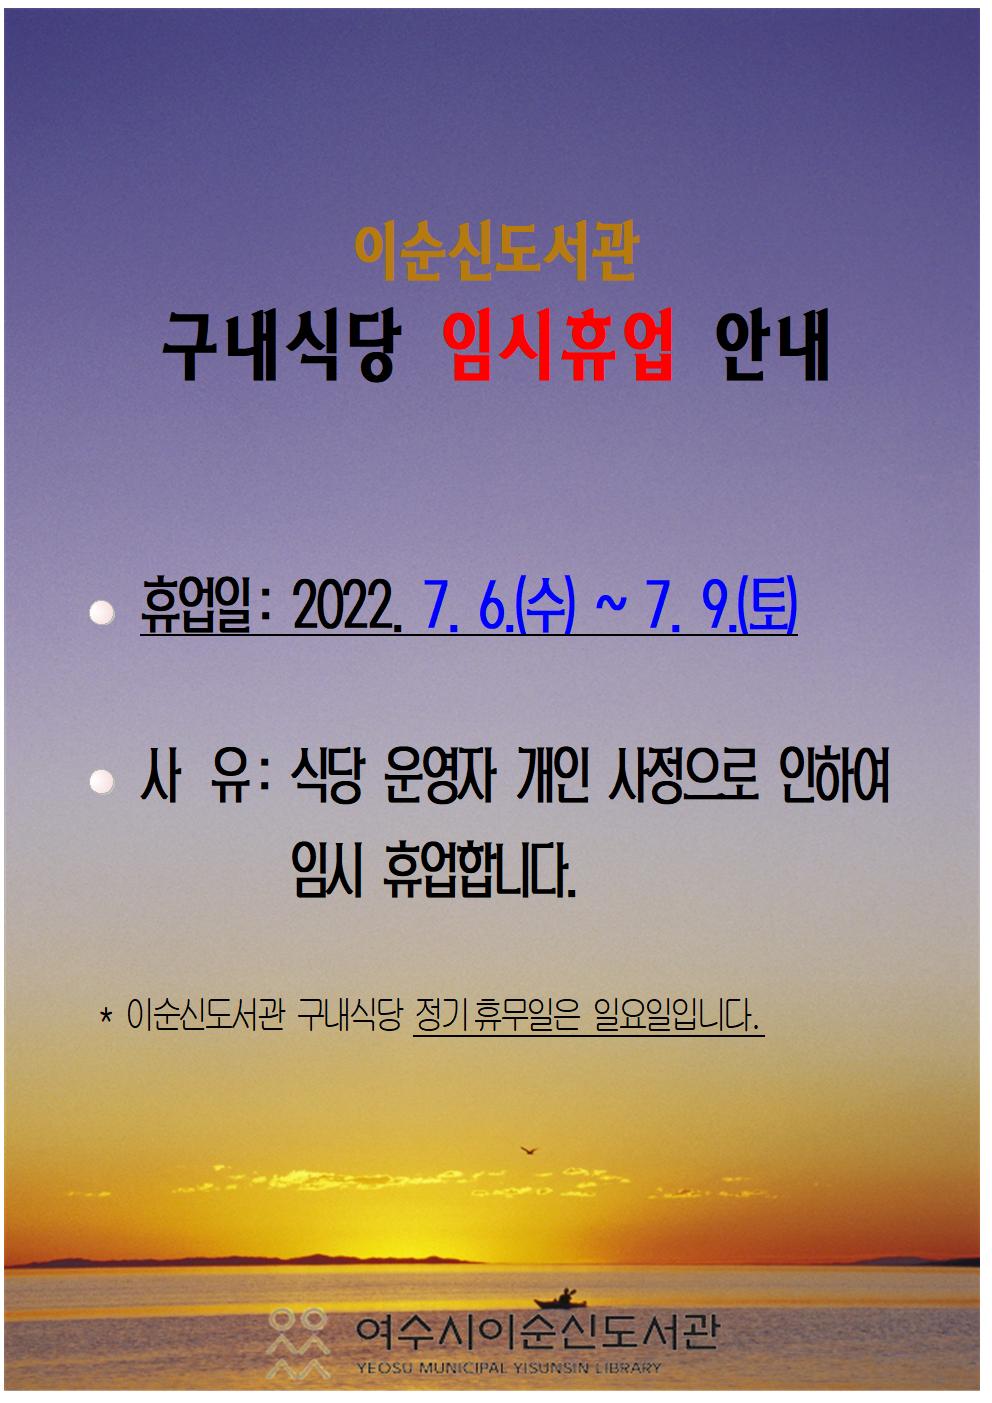 이순신도서관 구내식당 임시휴무(7. 6.~7. 9.)  알림